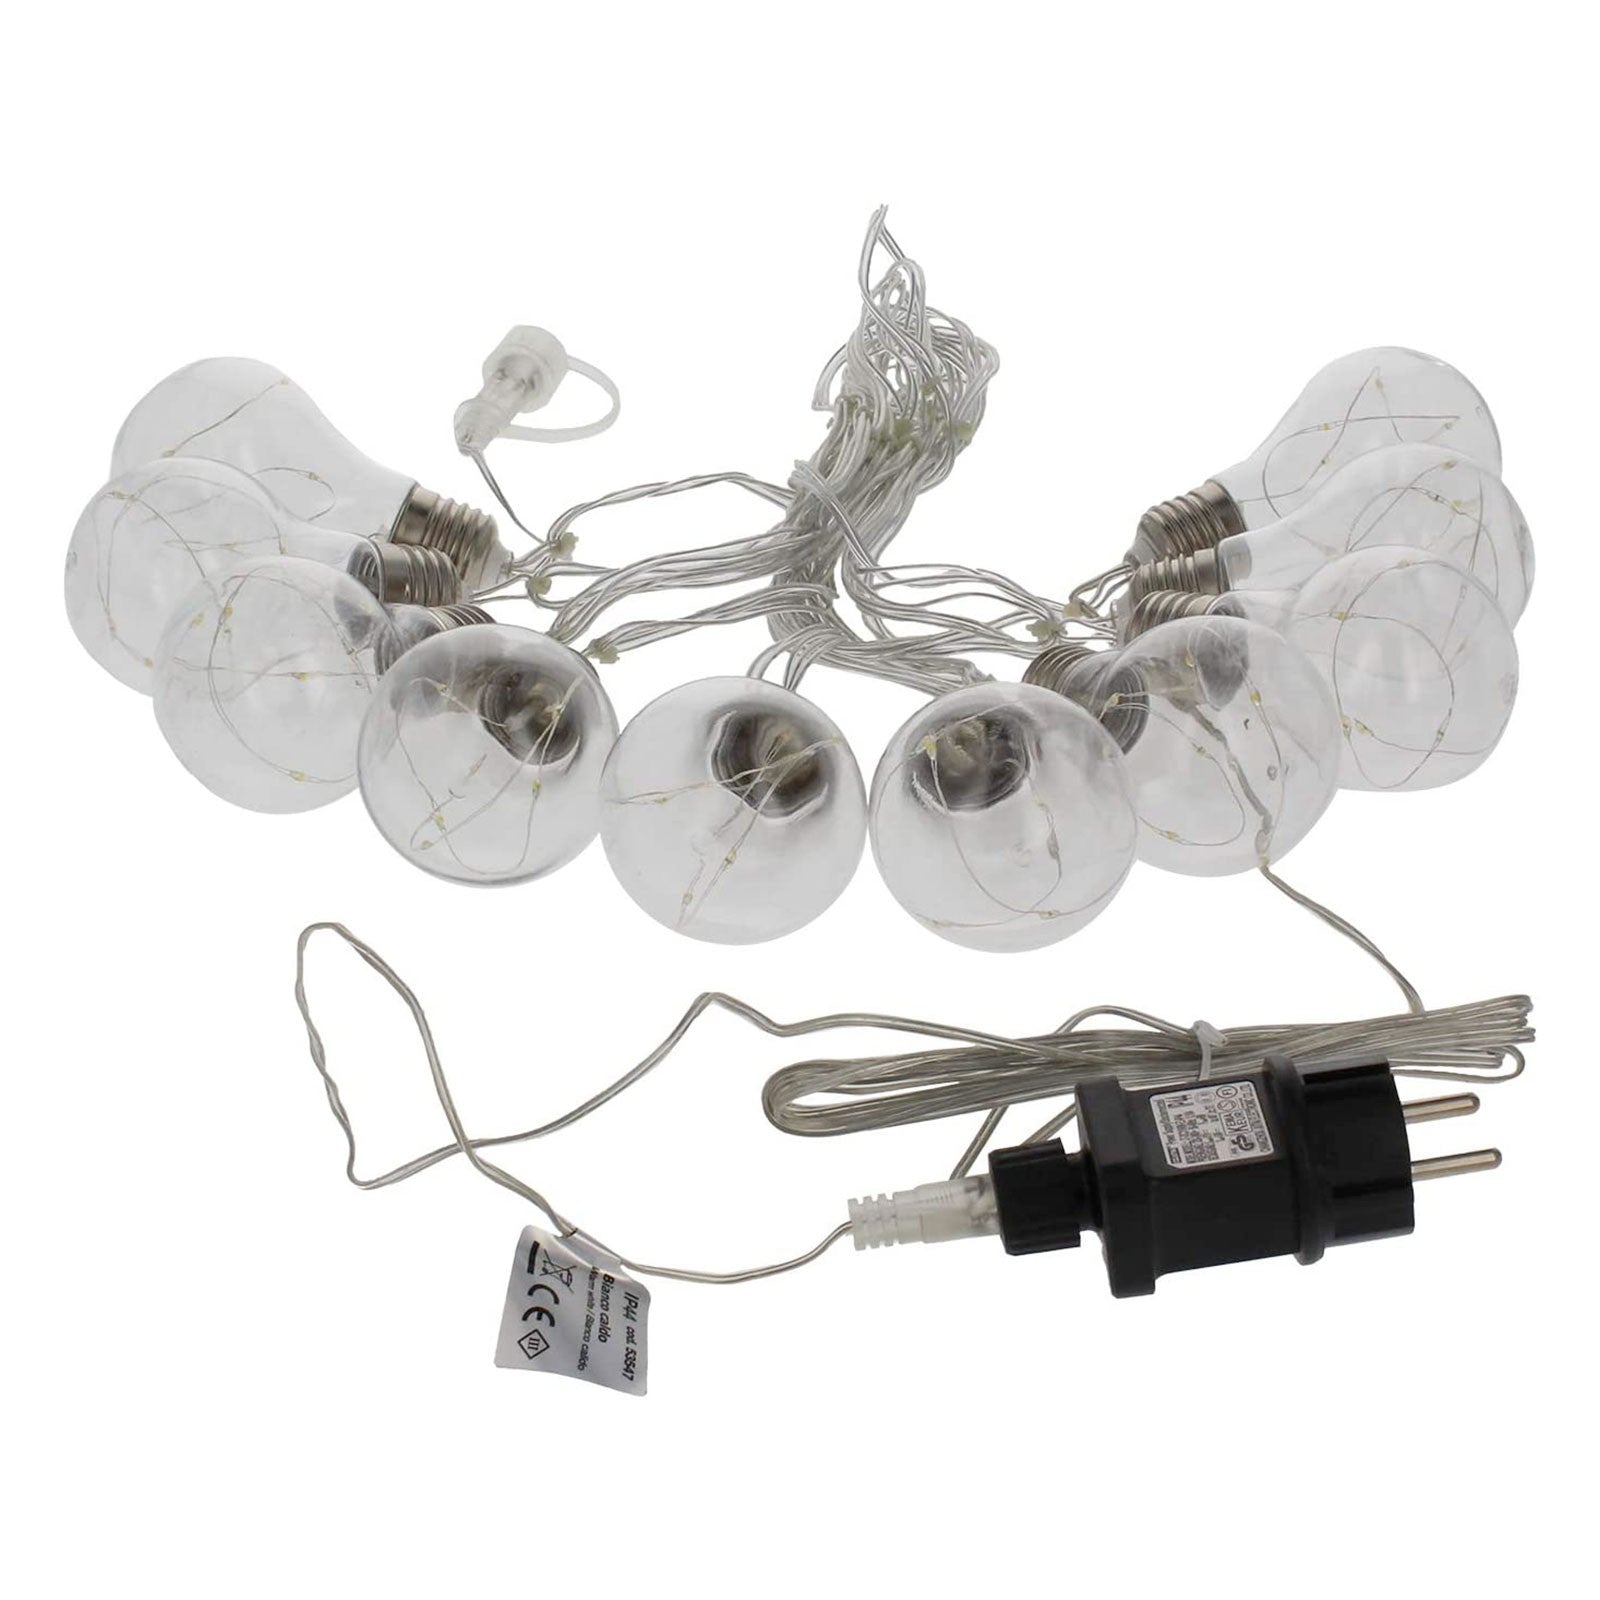 Serie di lampadine con microled a luce calda all'interno per interno ed esterno 4,8 mt